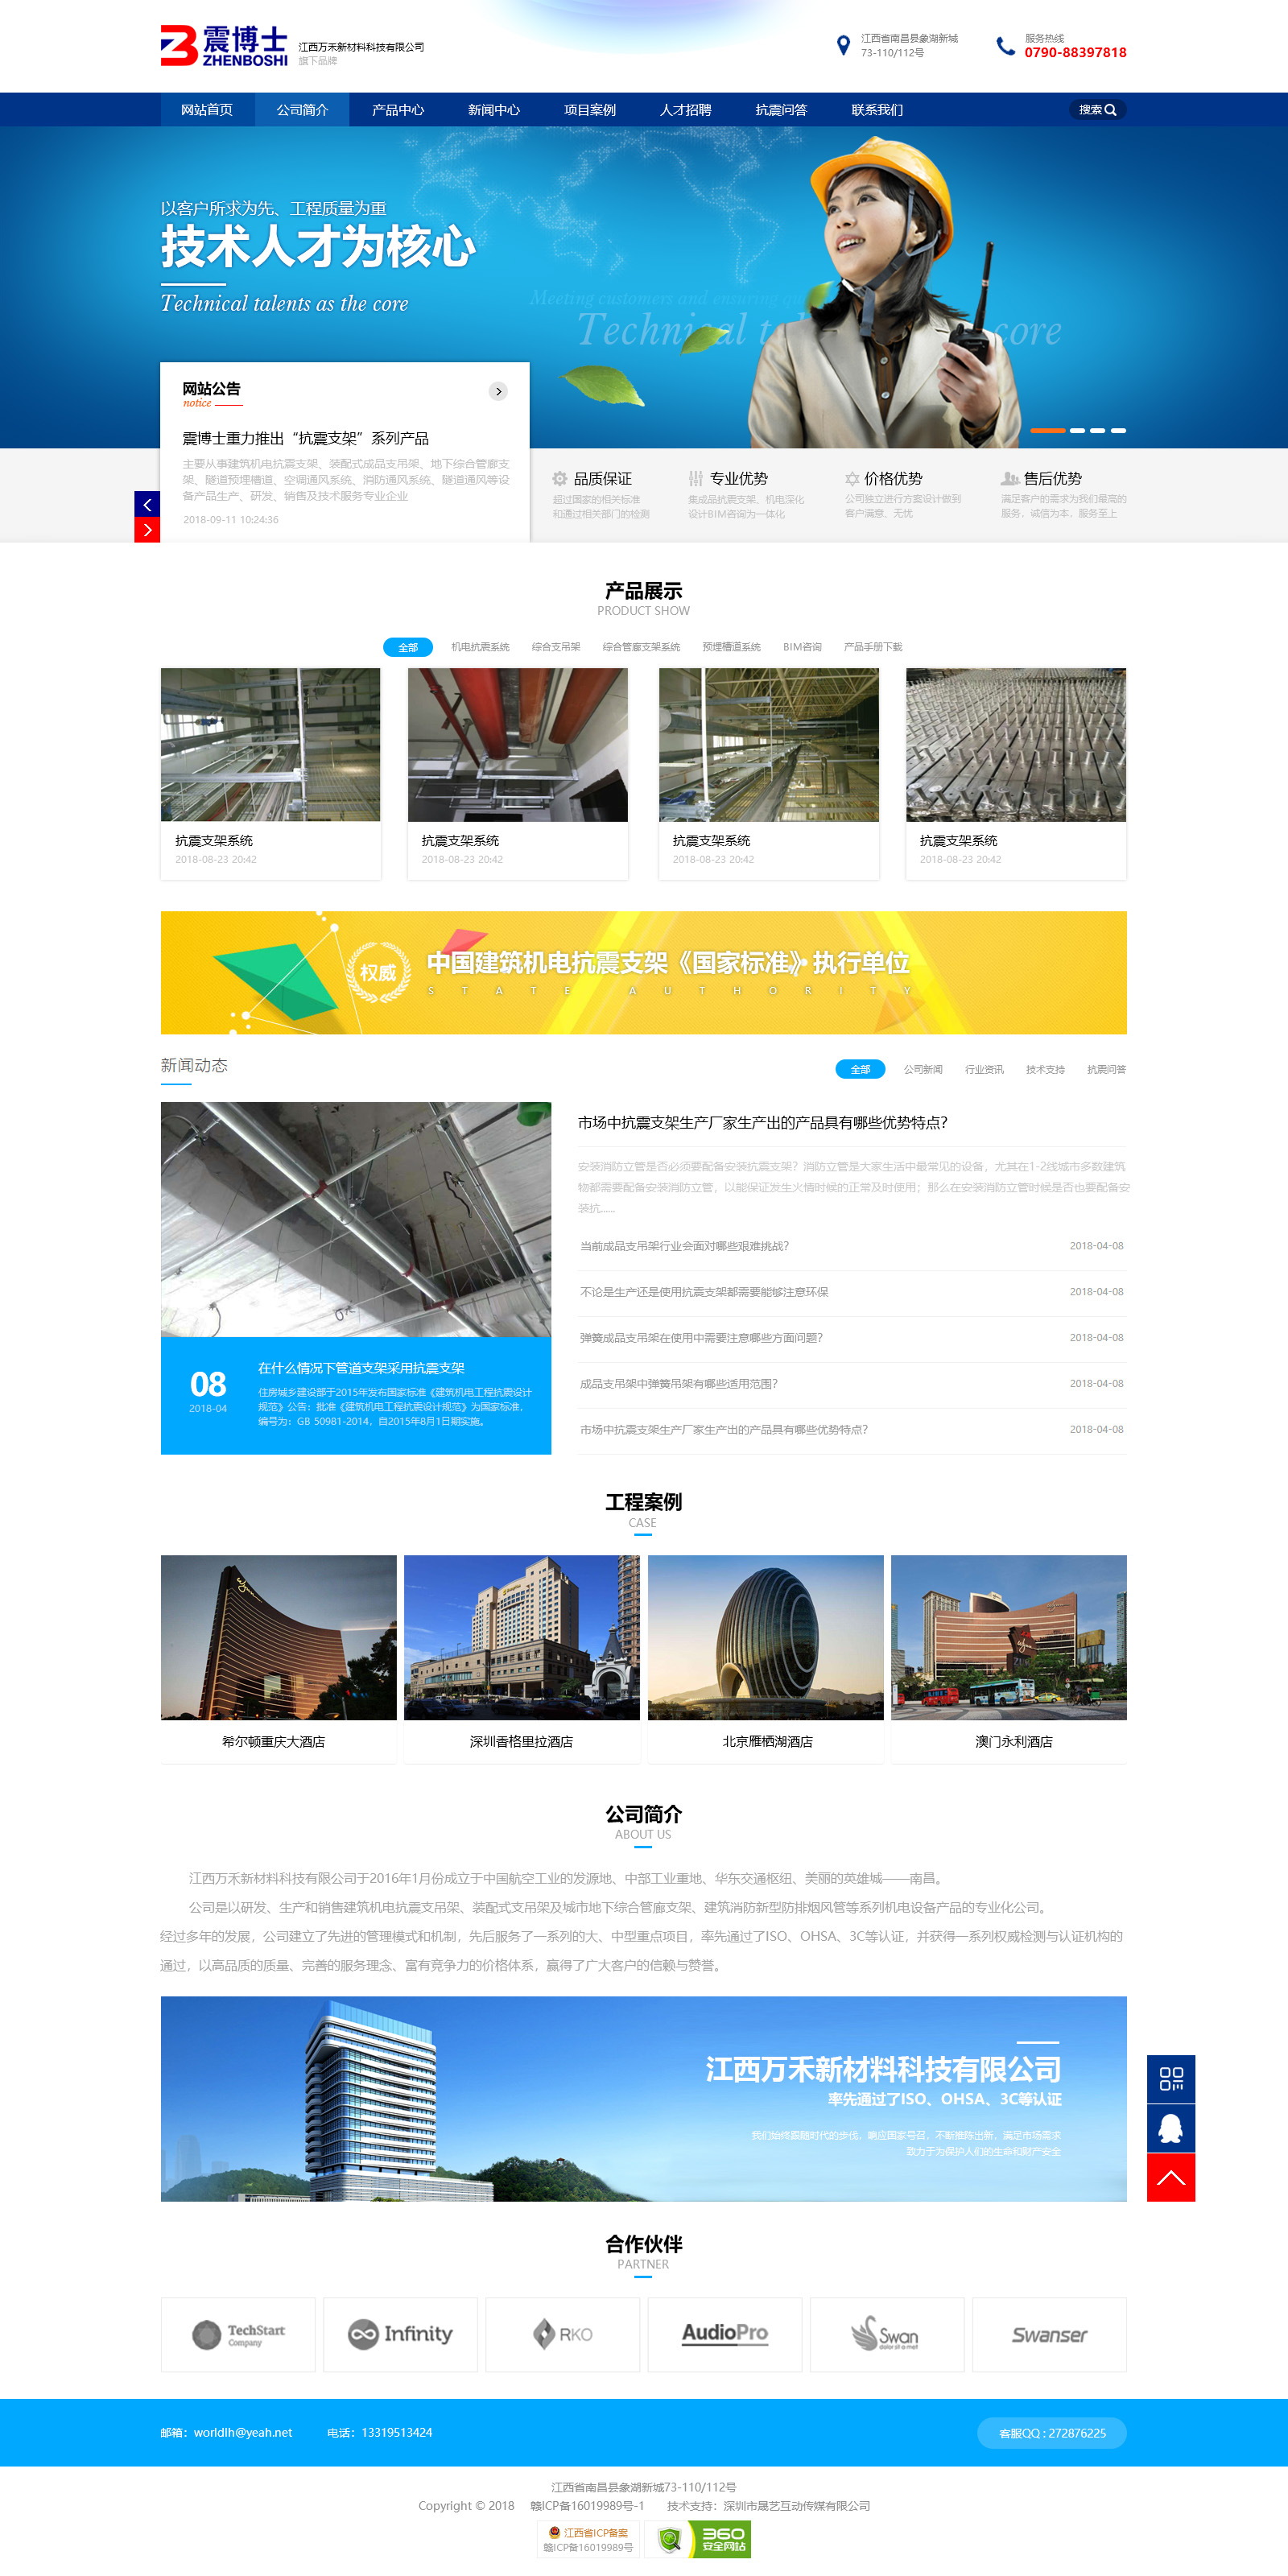 抗震建材企业网站设计PSD素材源码